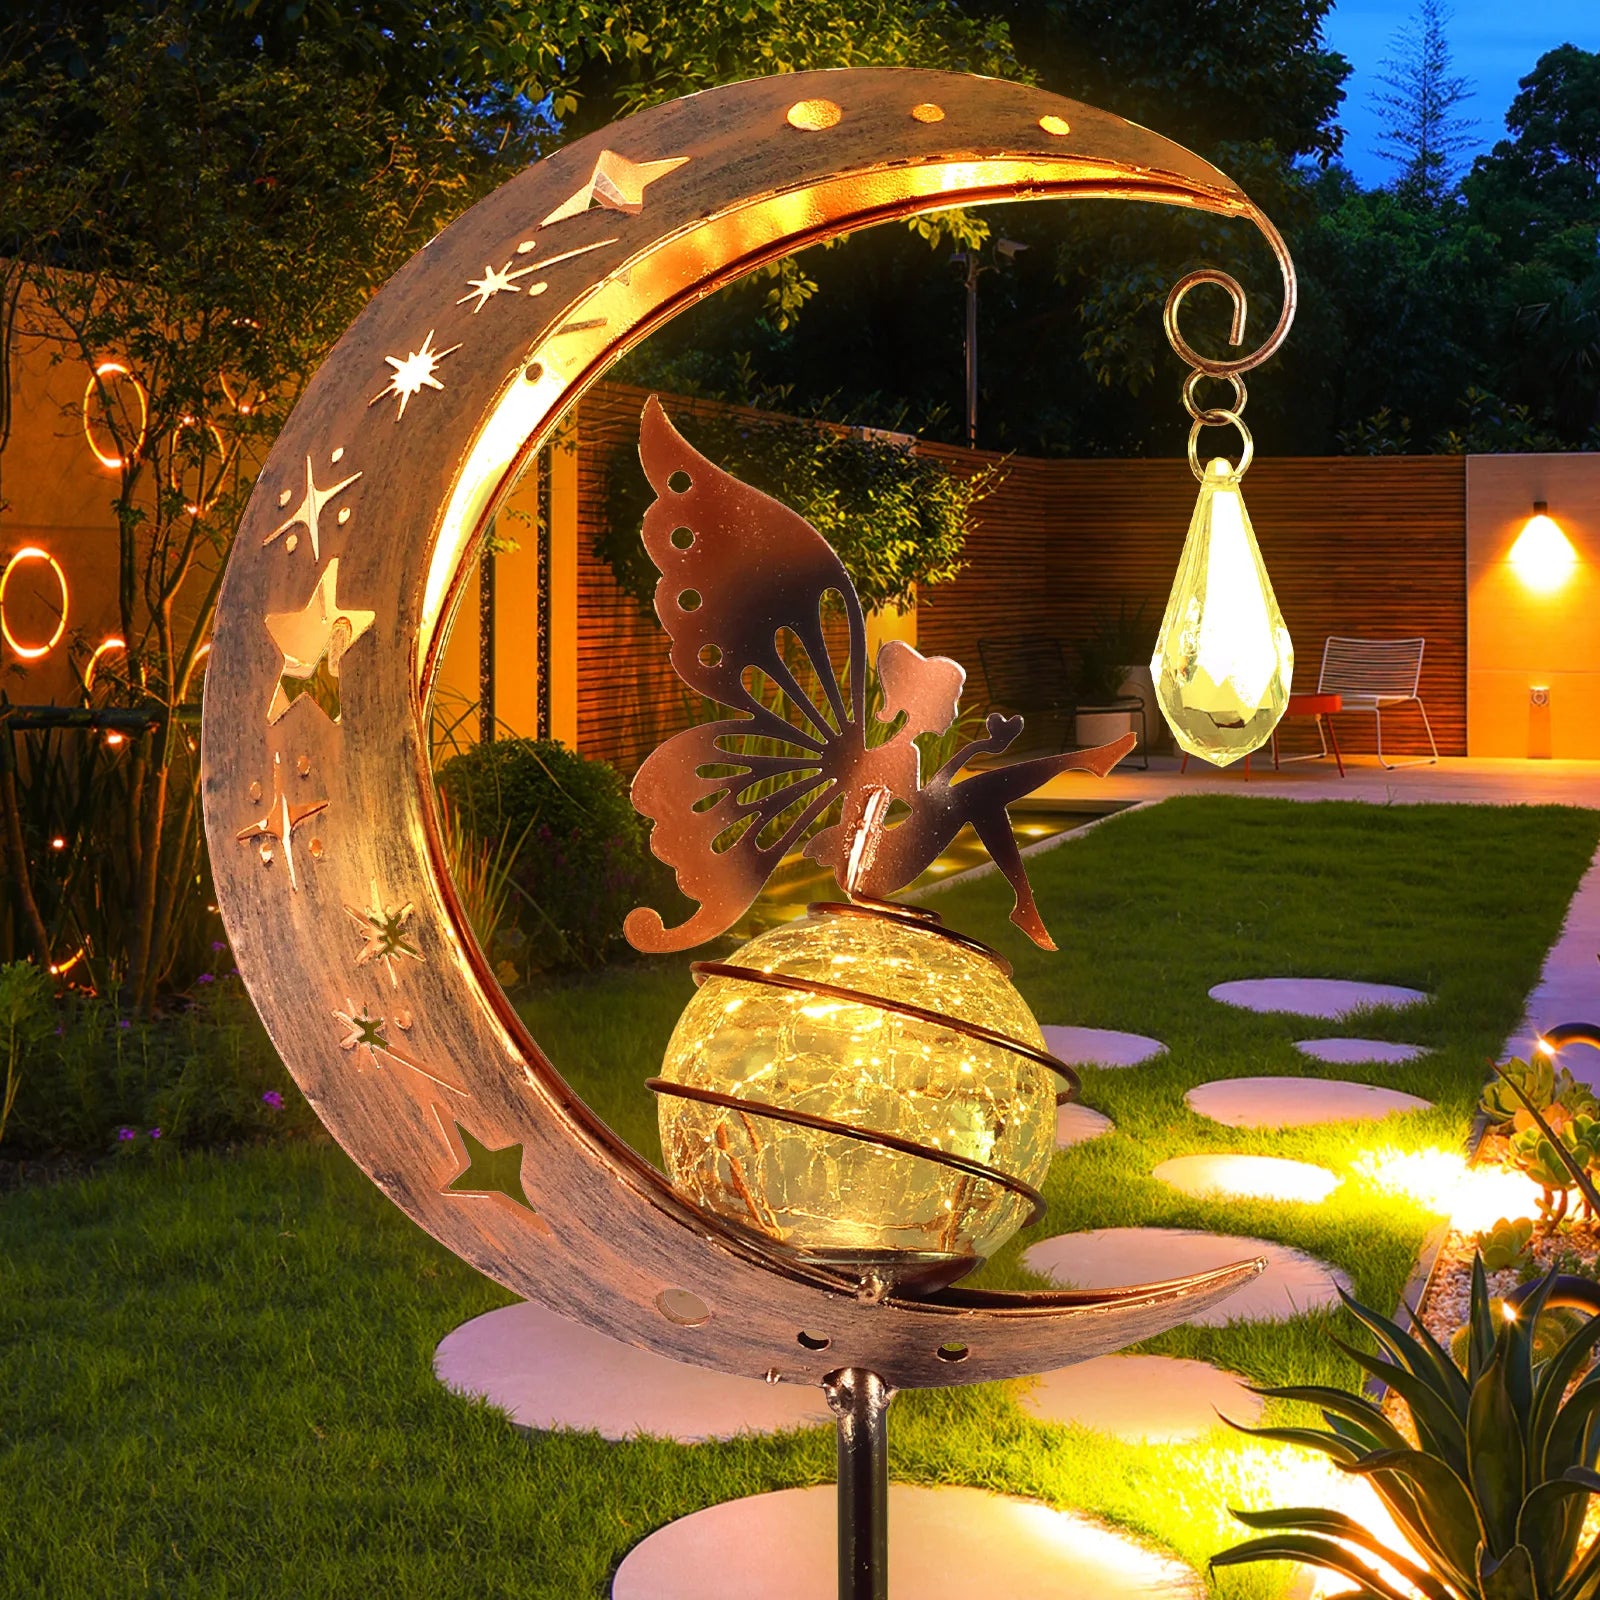 Bajkowy księżyc słoneczny trawnik zewnętrzny ornament kreatywny dekoracyjny żelazny pusty kąt lampy kulkowej sztuki